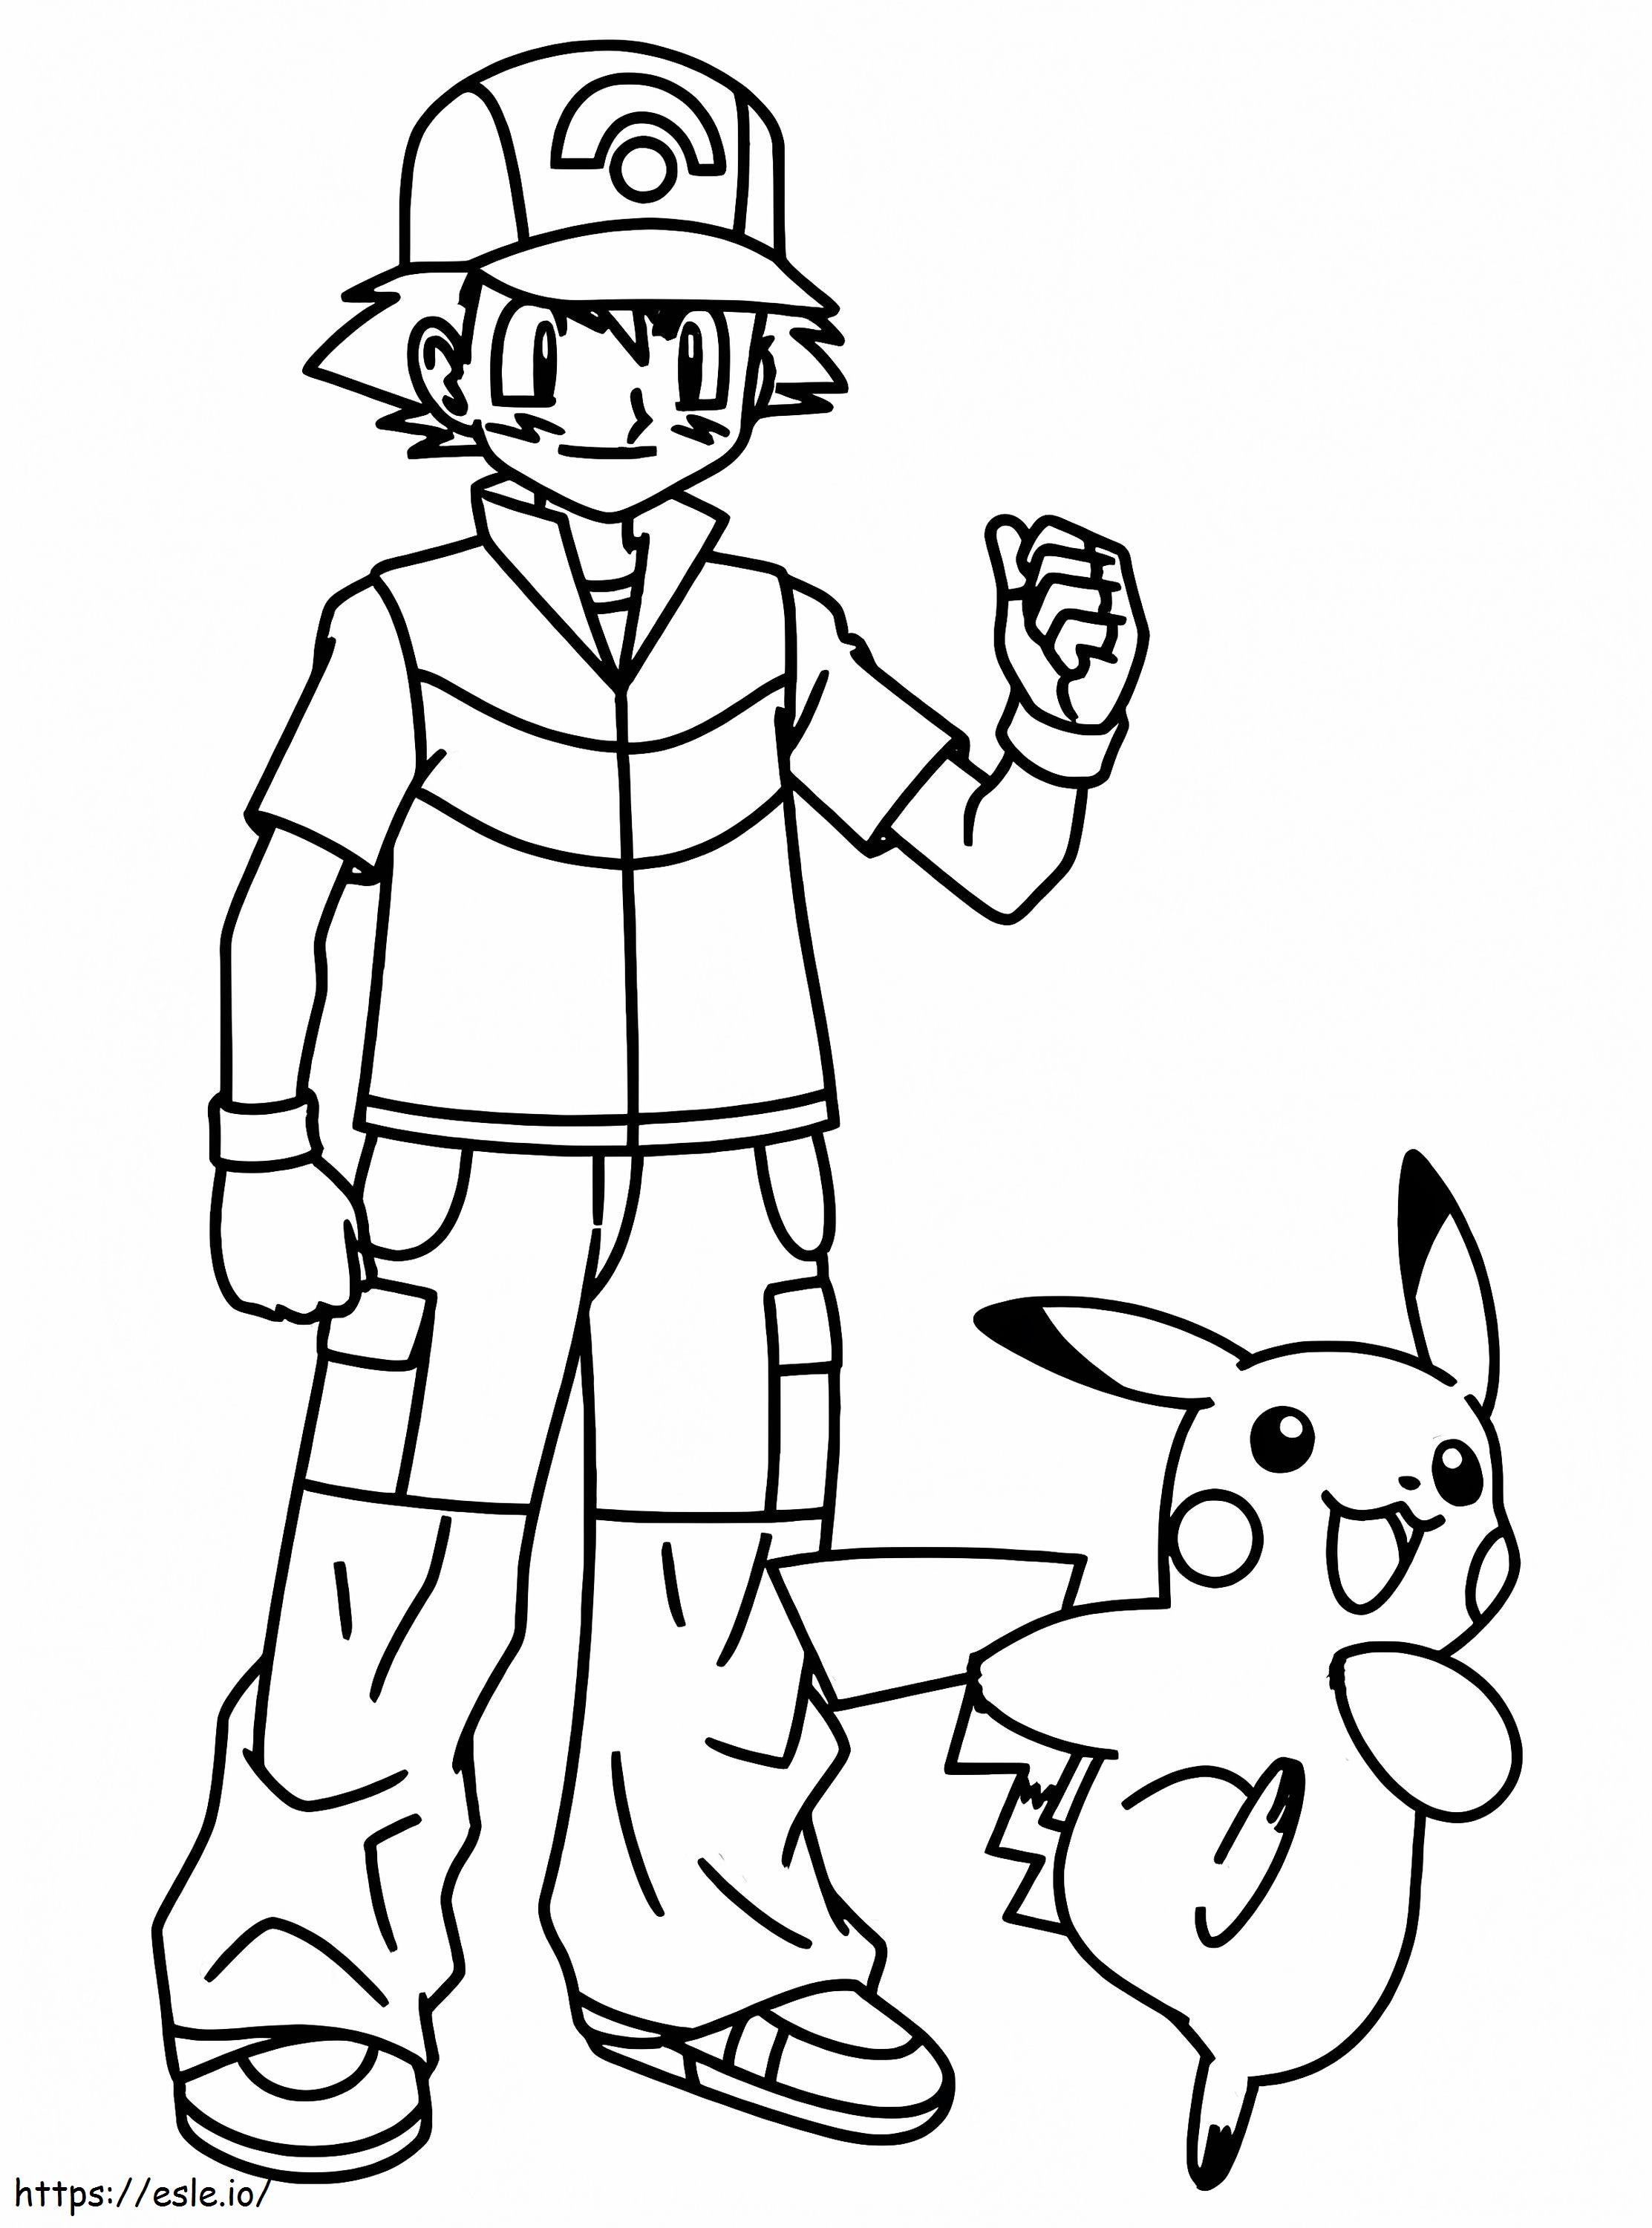 Desenhos para colorir de desenho do pokémon pikachu feliz para